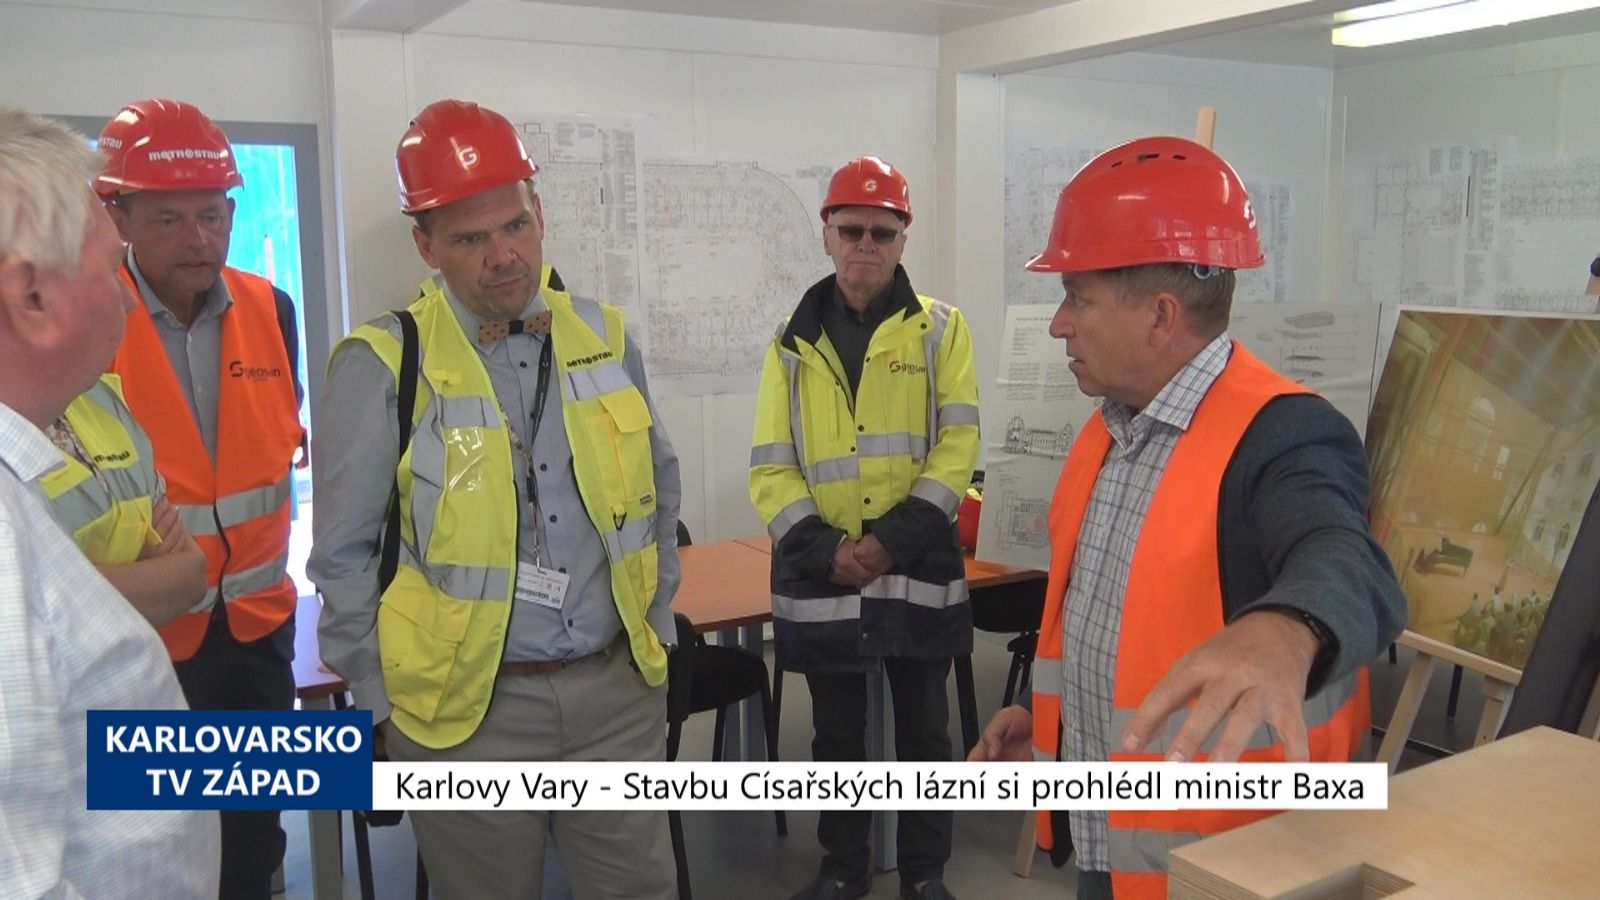 Karlovy Vary: Stavbu Císařských lázní si prohlédl ministr Baxa (TV Západ)